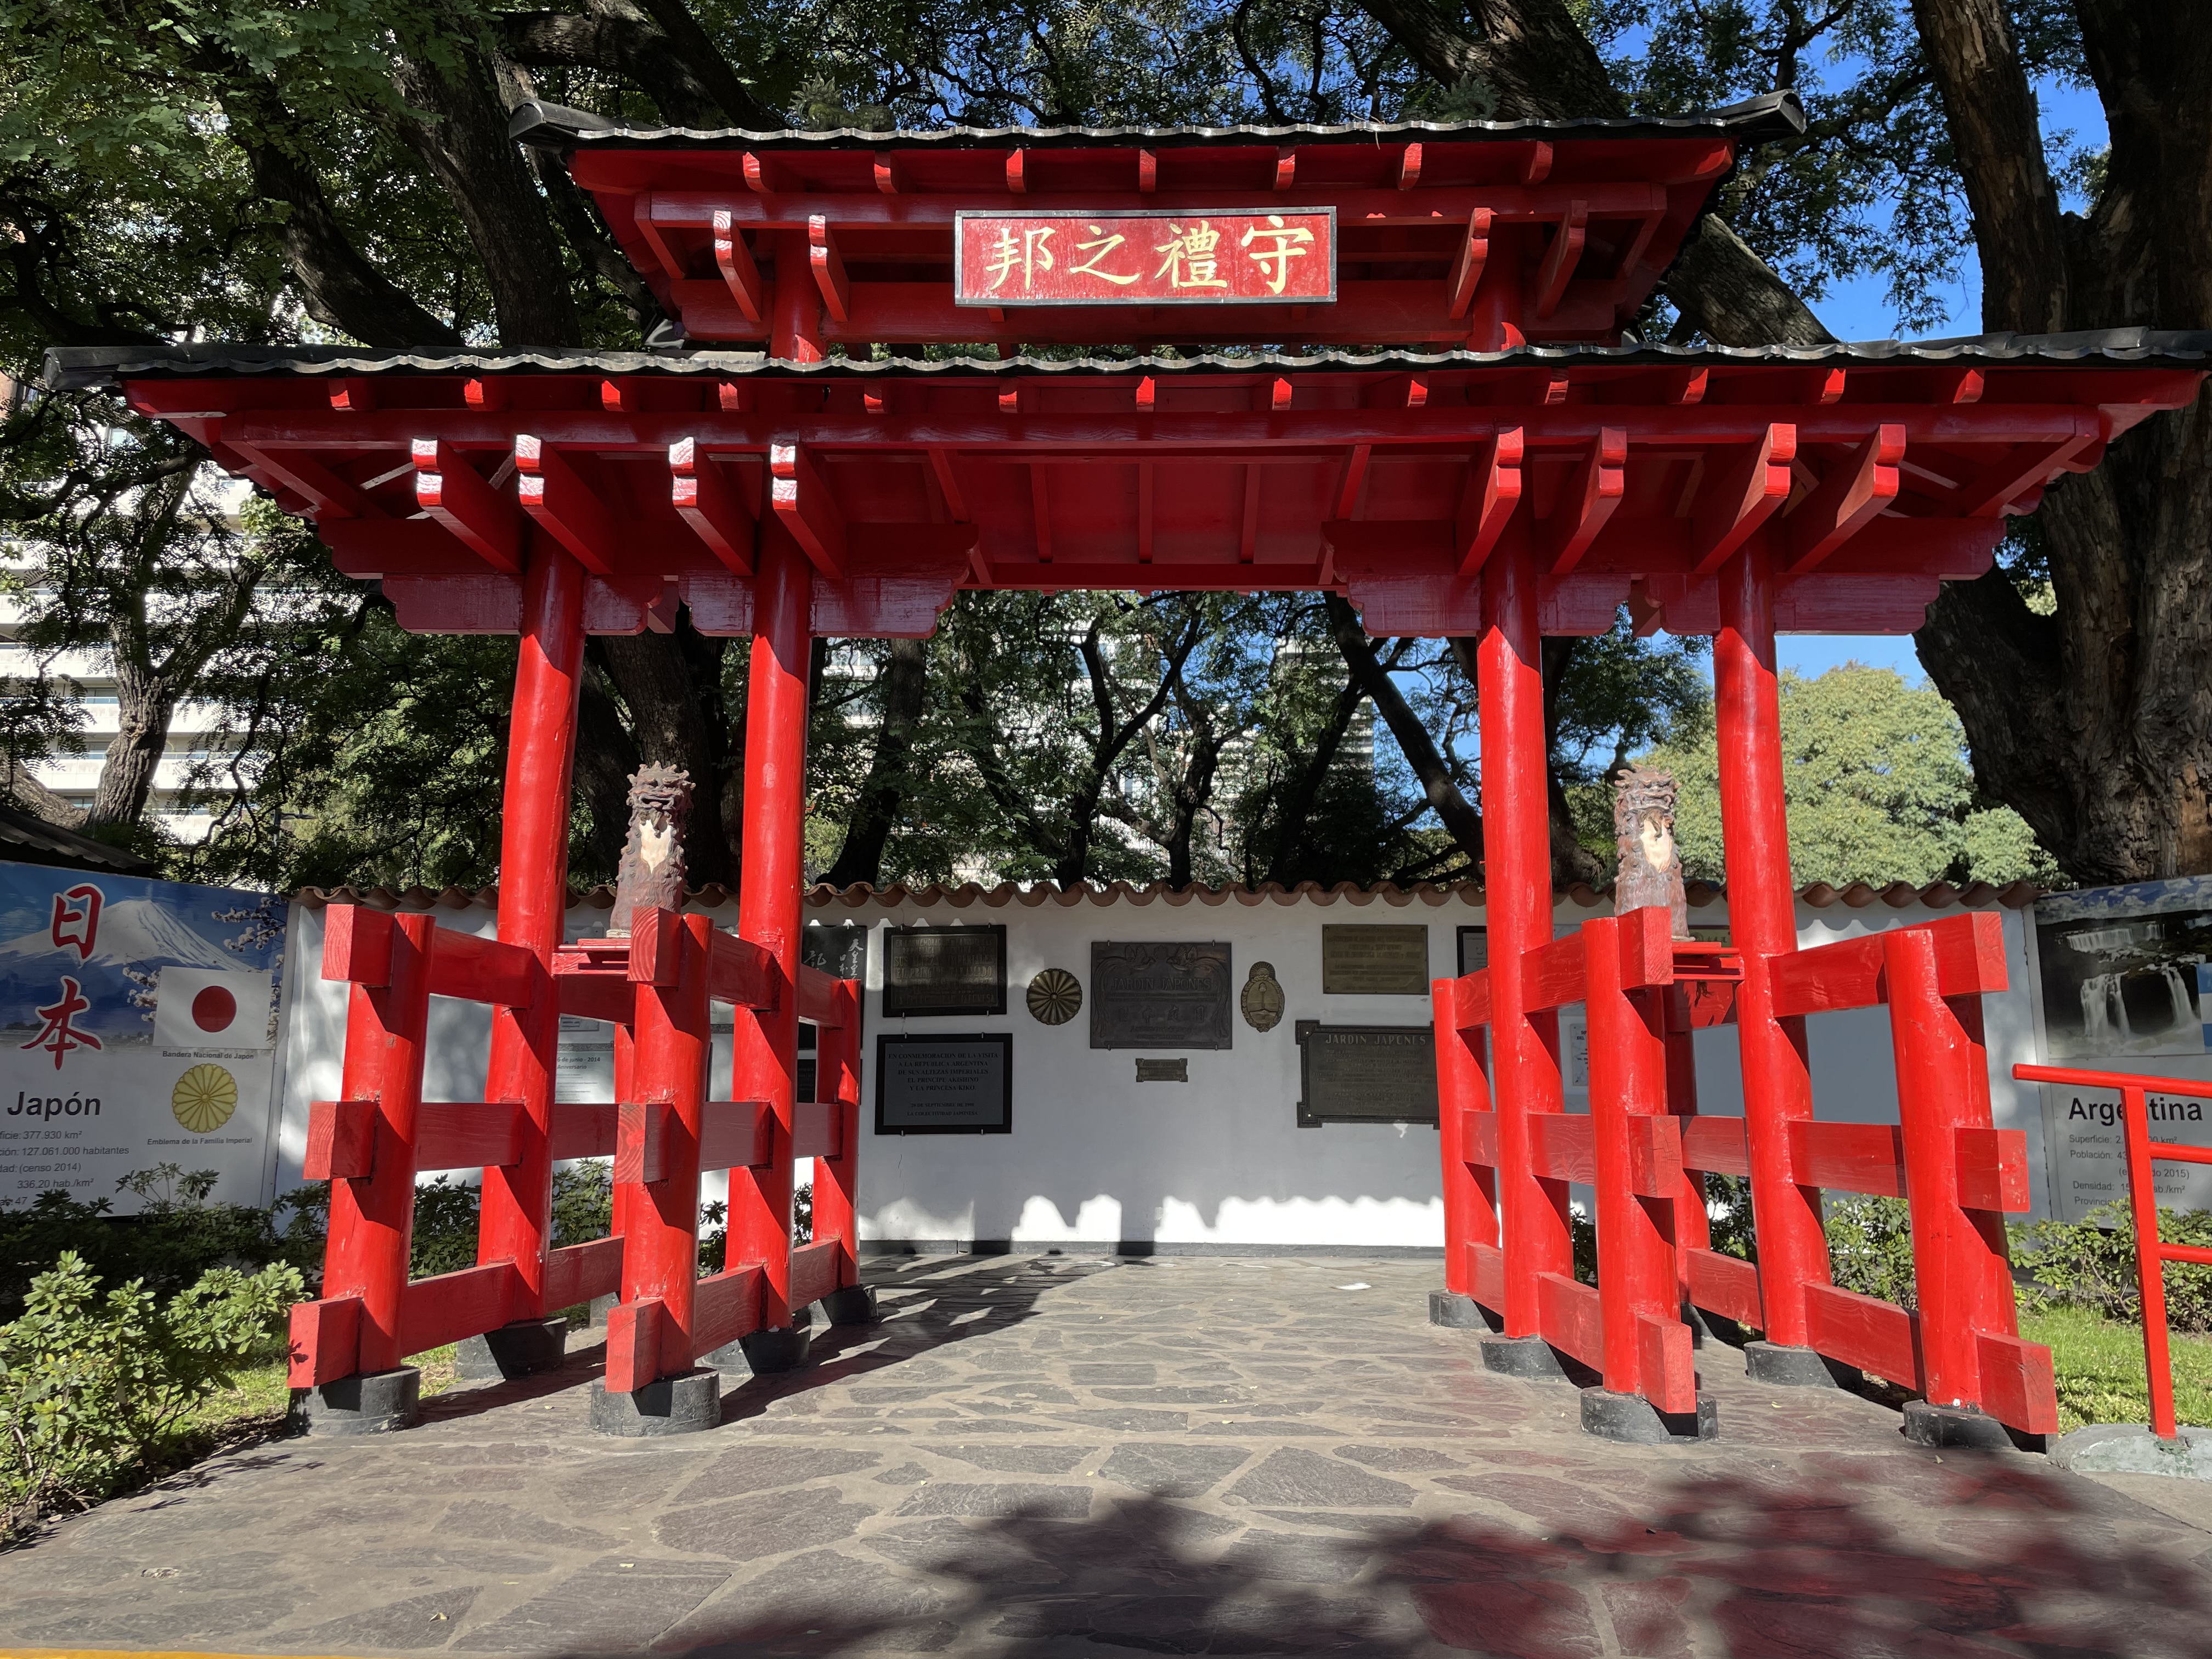 ▷ Koi Gate, um passeio pela Cultura Oriental ☯ - Bodog